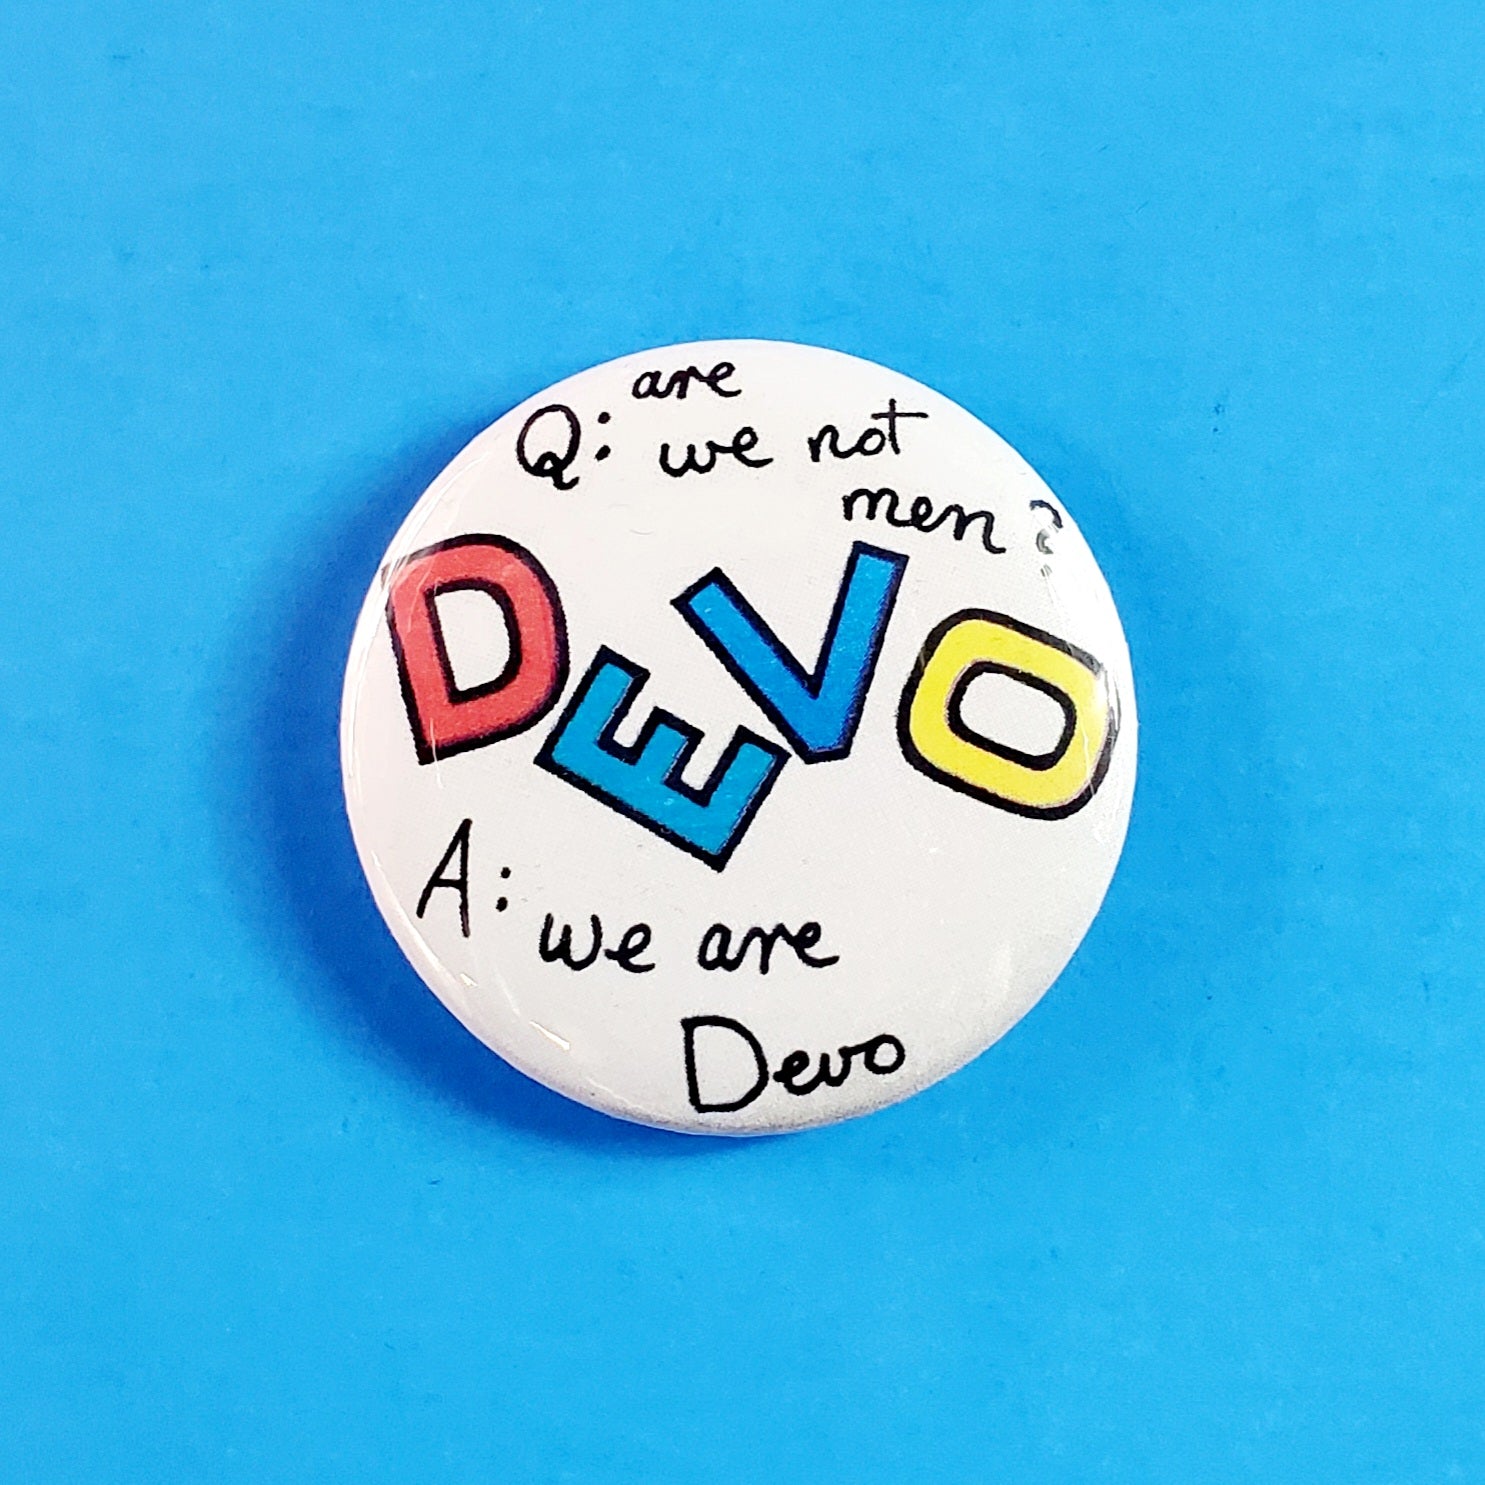 Devo “Are We Not Men?” 2.25" Button